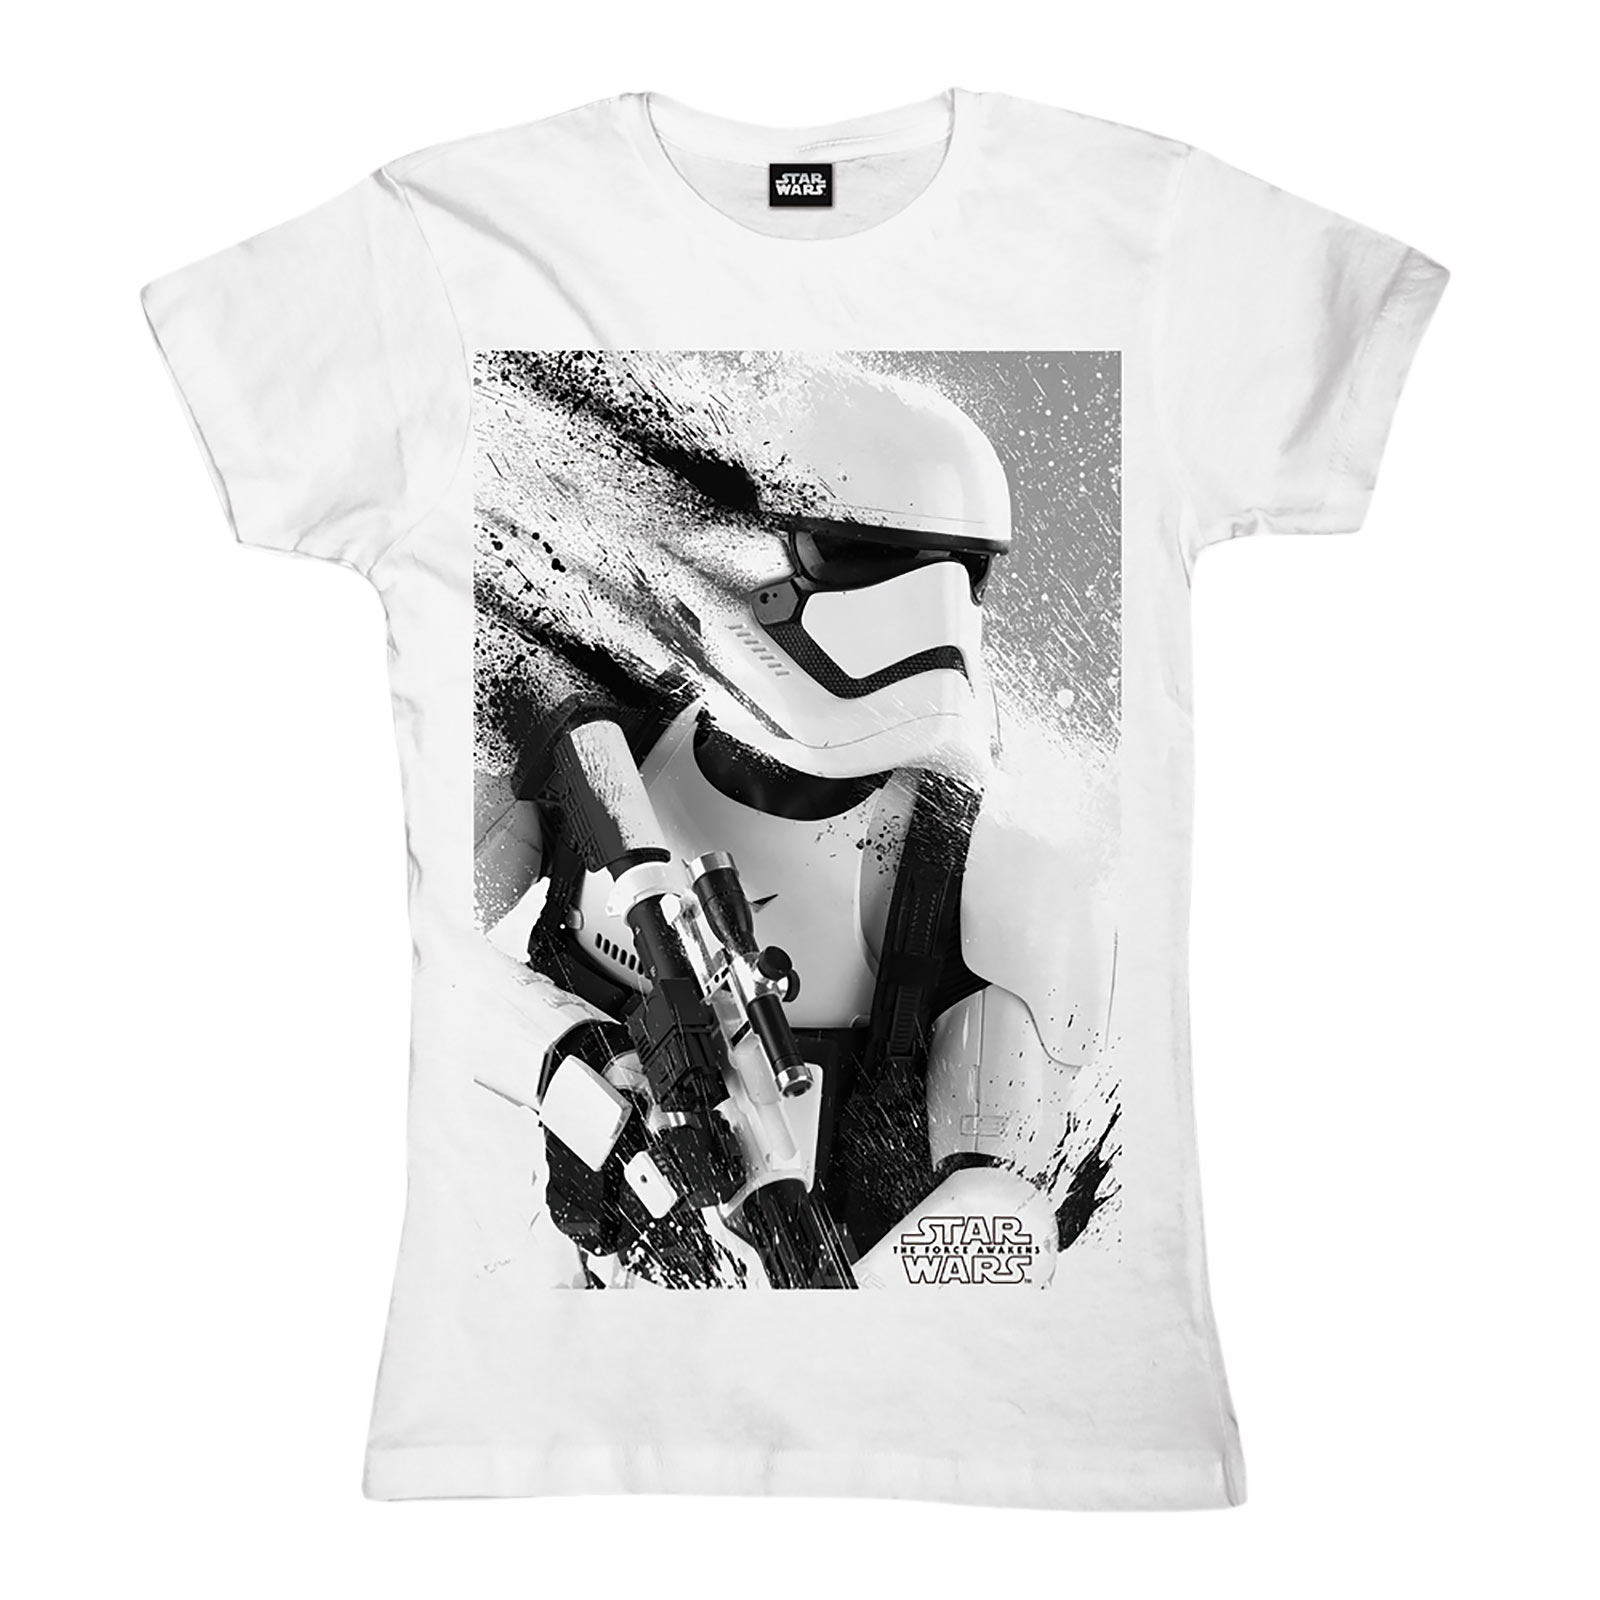 Star Wars - Stormtrooper Splatter Girlie Shirt white